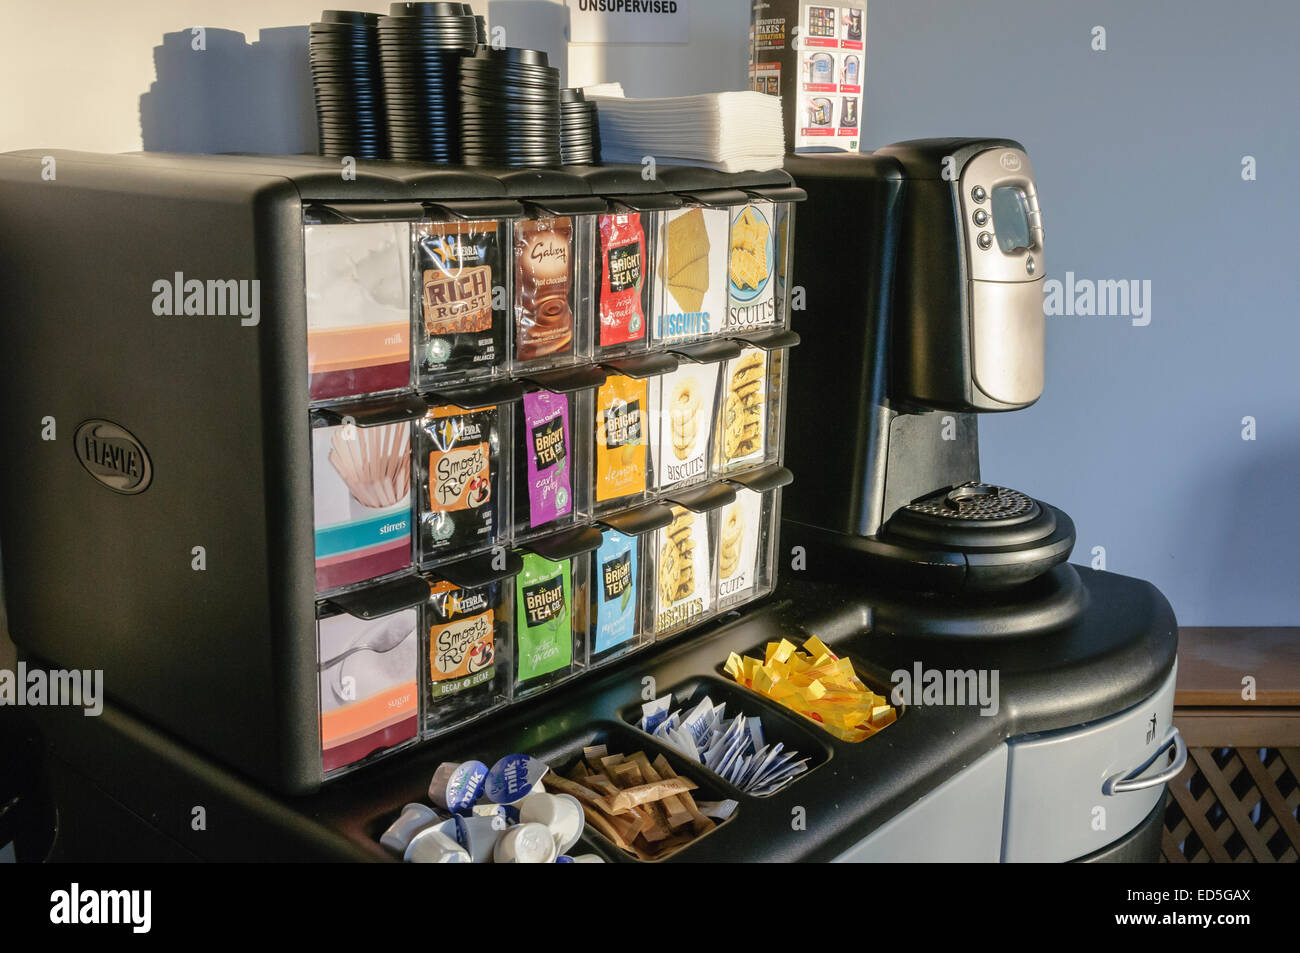 Flavia Kaffee Maschine mit einer Auswahl an Beutel Tee, Kaffee und heiße  Schokolade Stockfotografie - Alamy